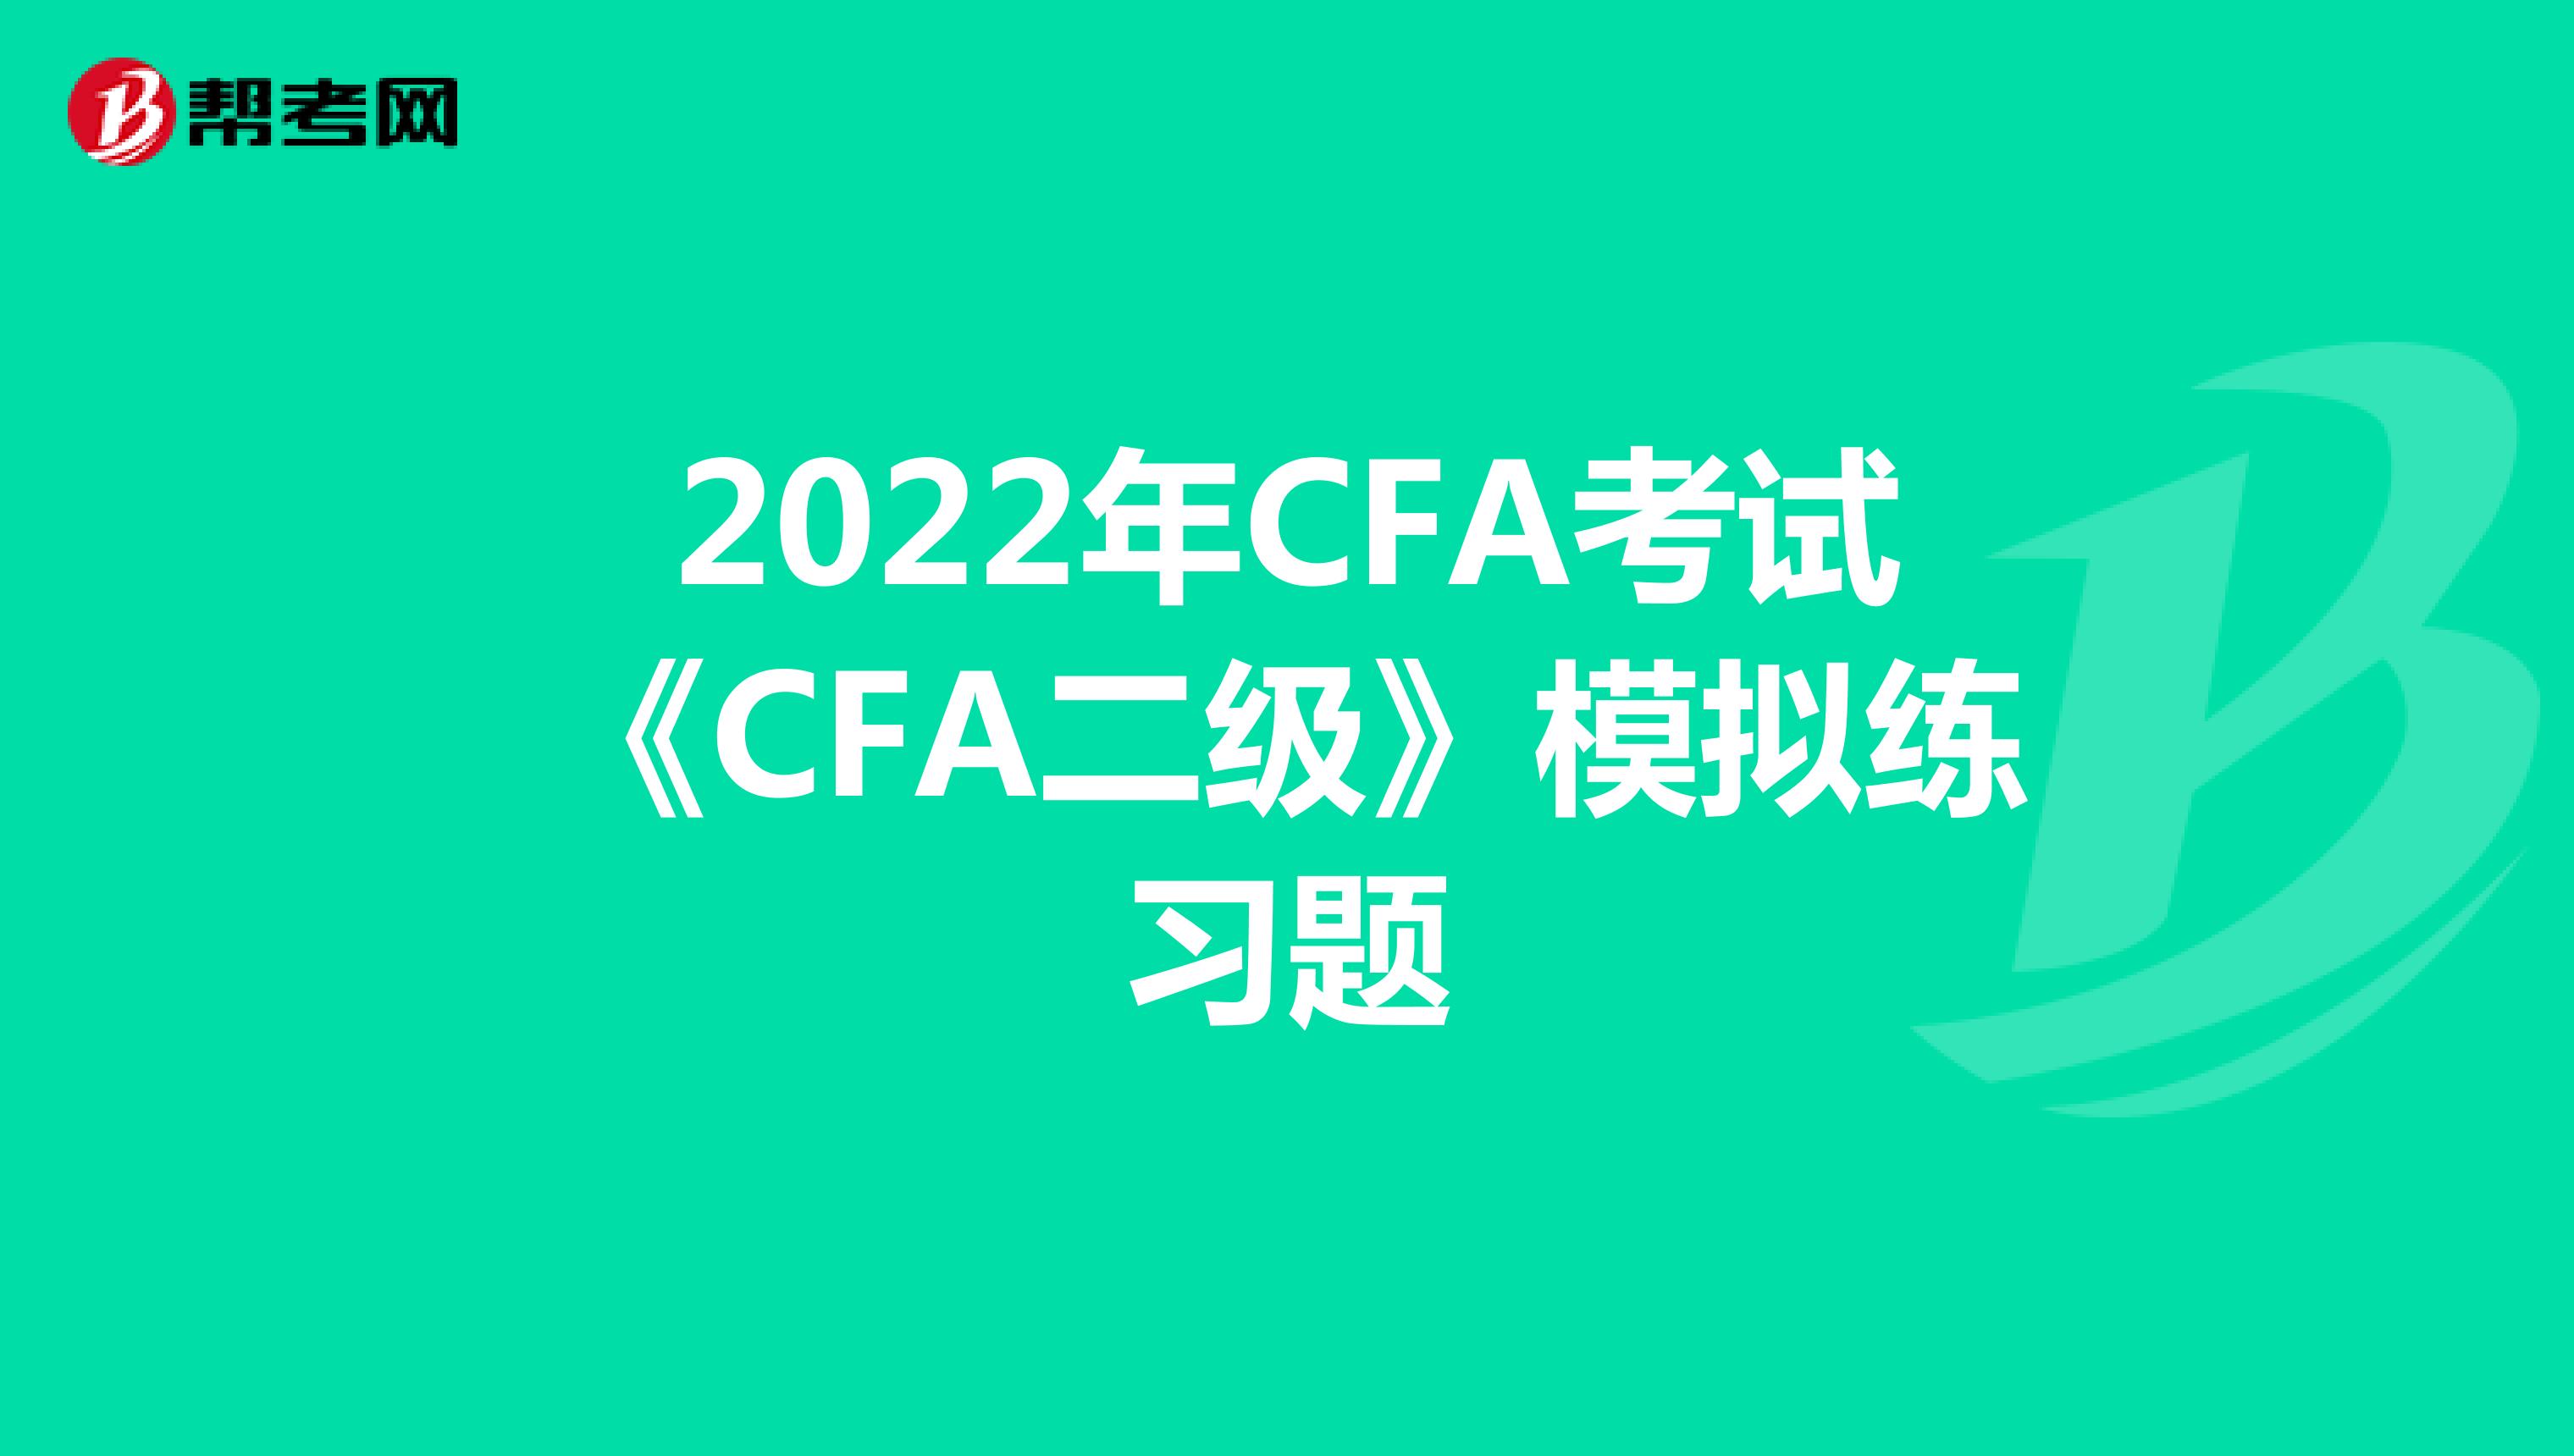 2022年CFA考试《CFA二级》模拟练习题